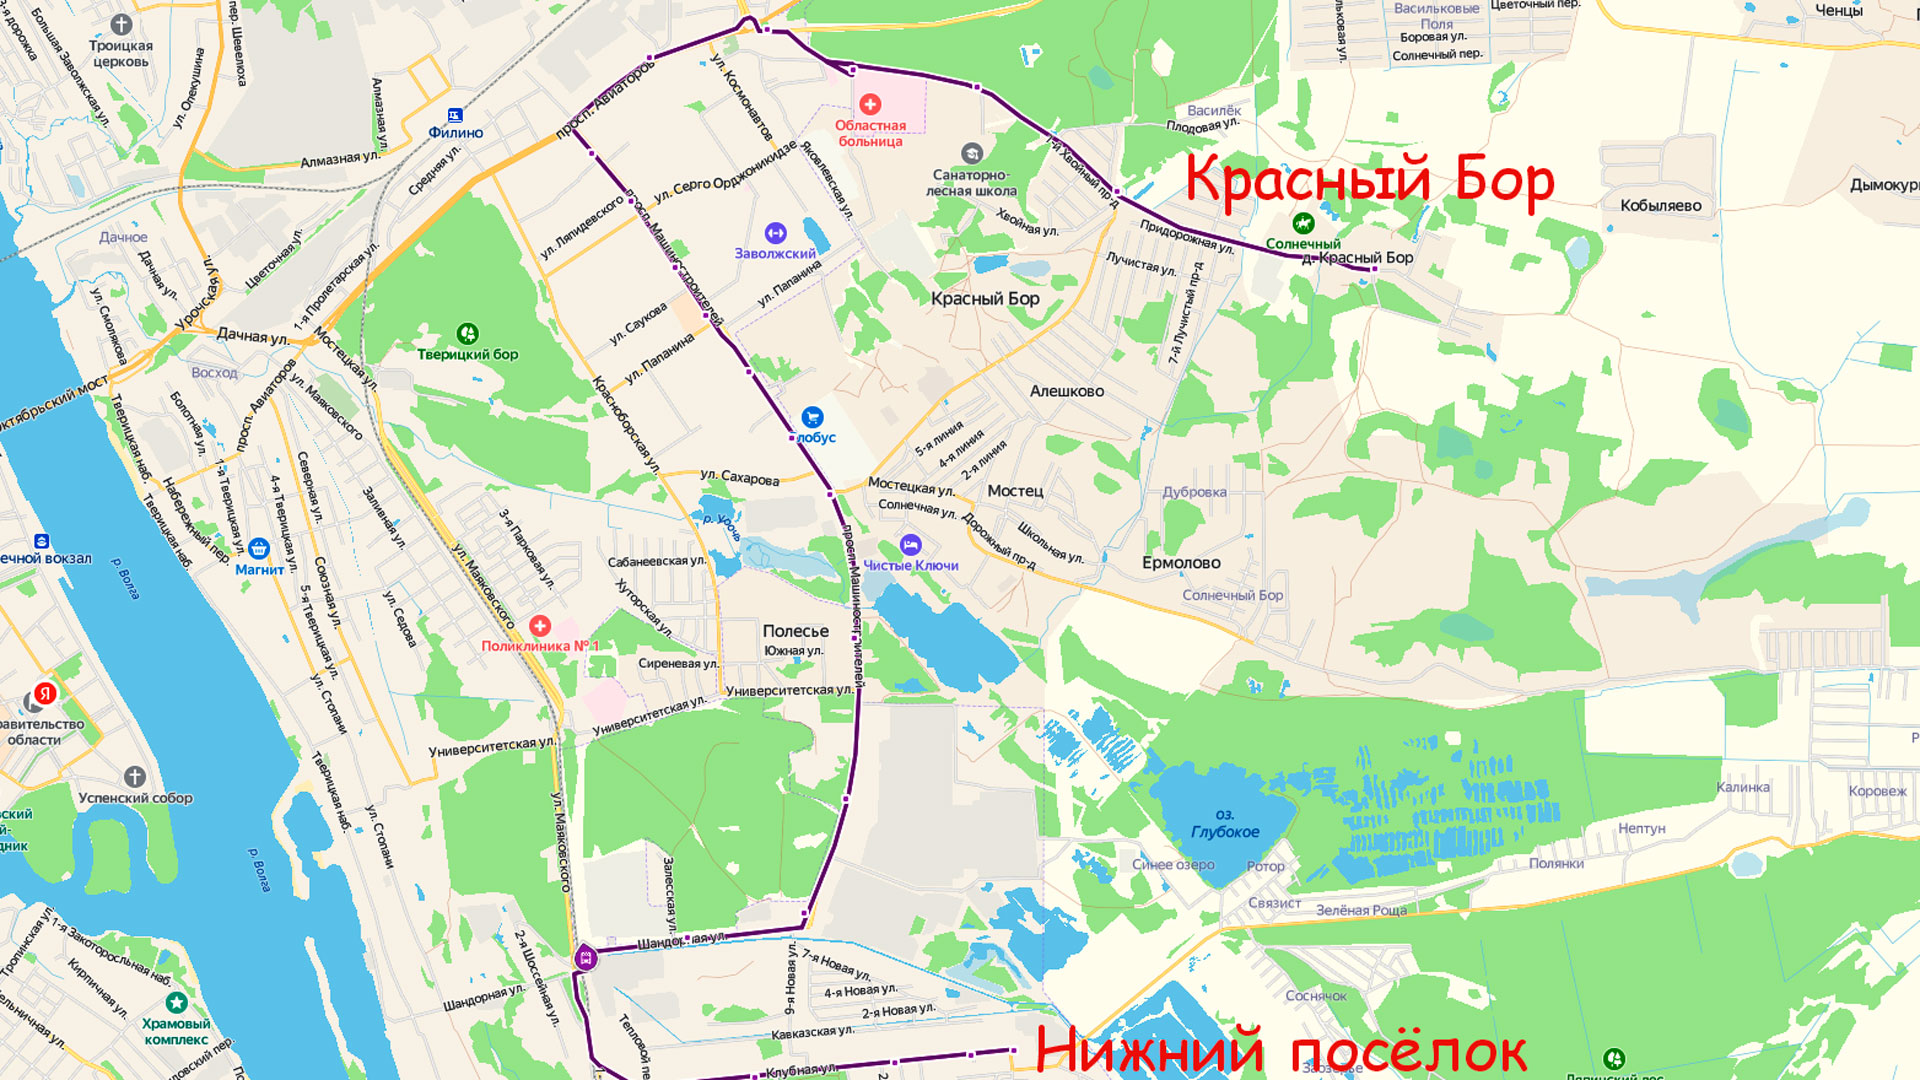 Маршрут маршрутки 132 в Ярославле на карте.